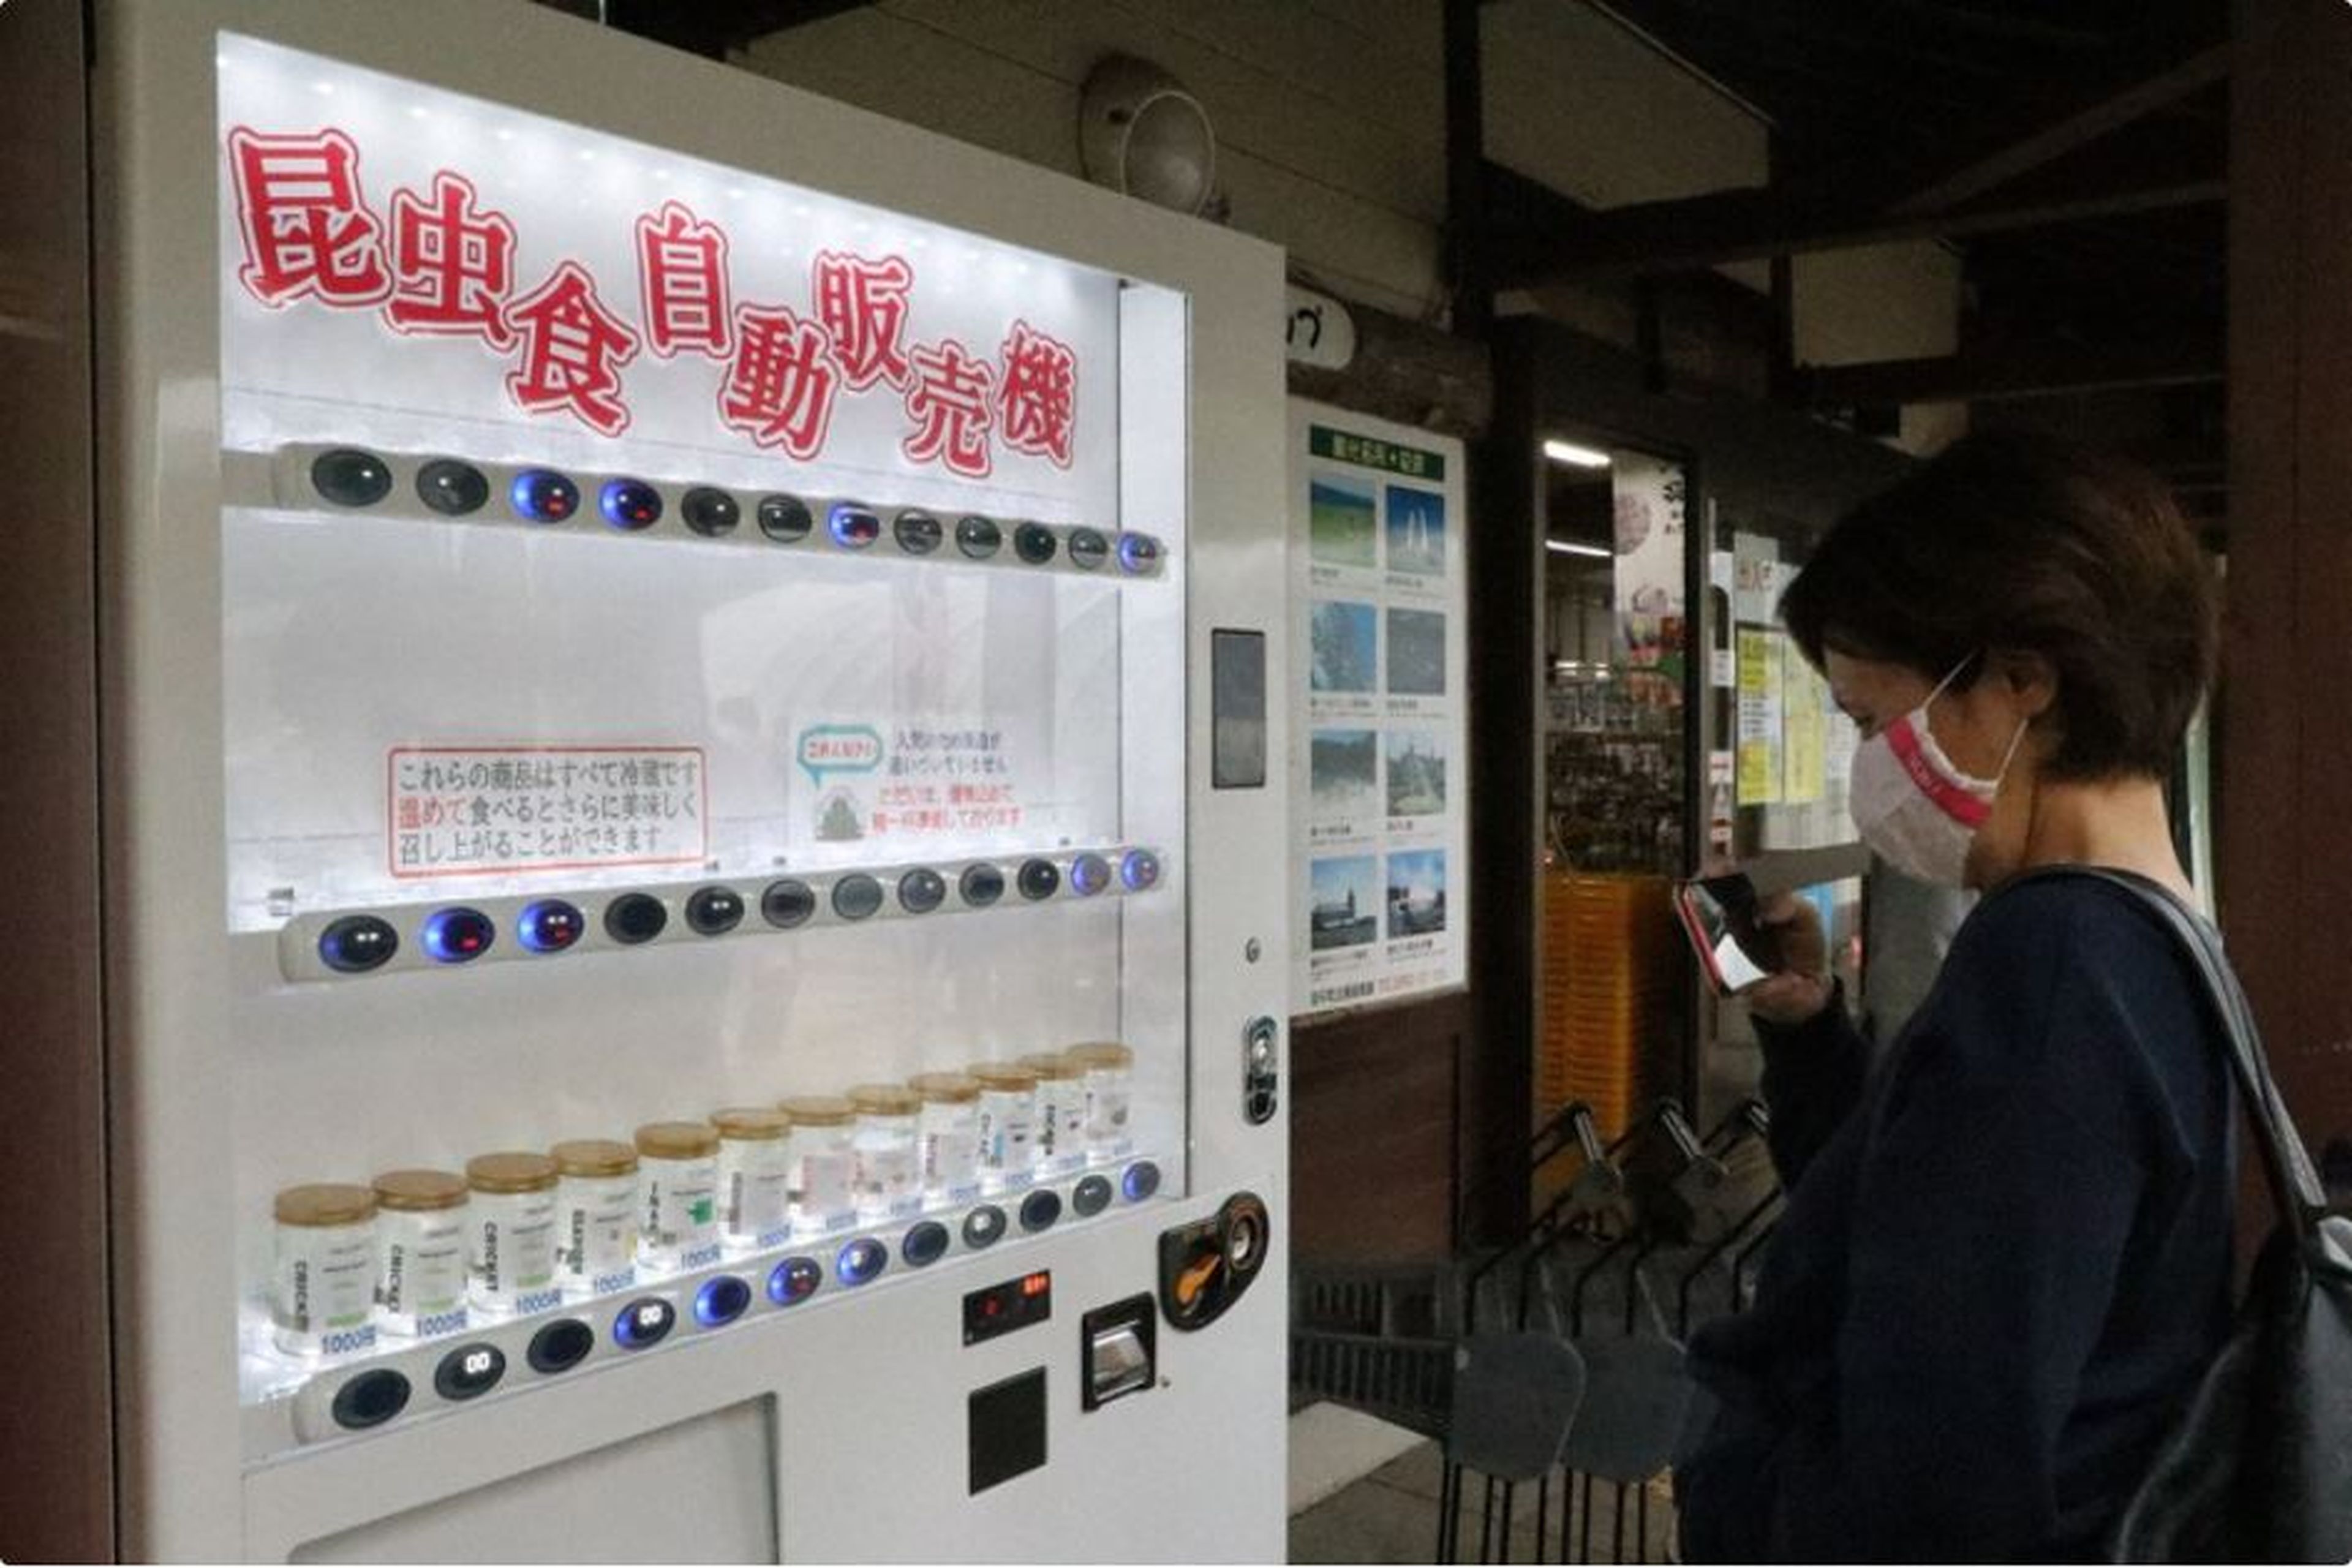 La máquina expendedora instalada en Nagasaki (Japón) cuenta con 9 tipos de insectos para su consumo.